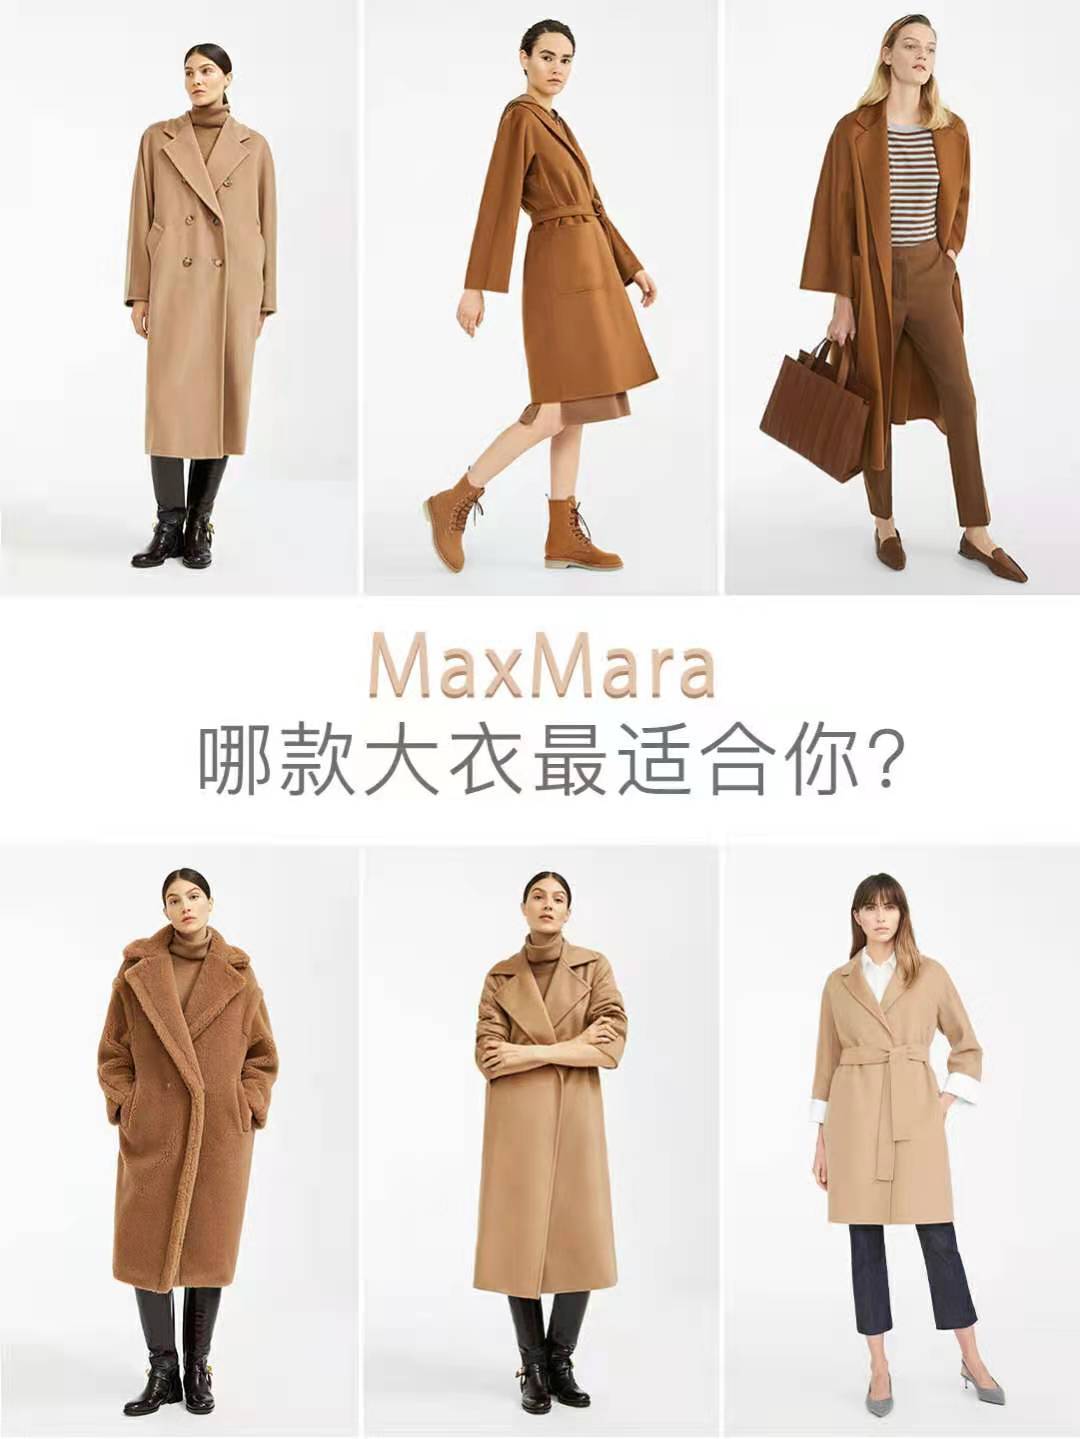 maxmara中国官网